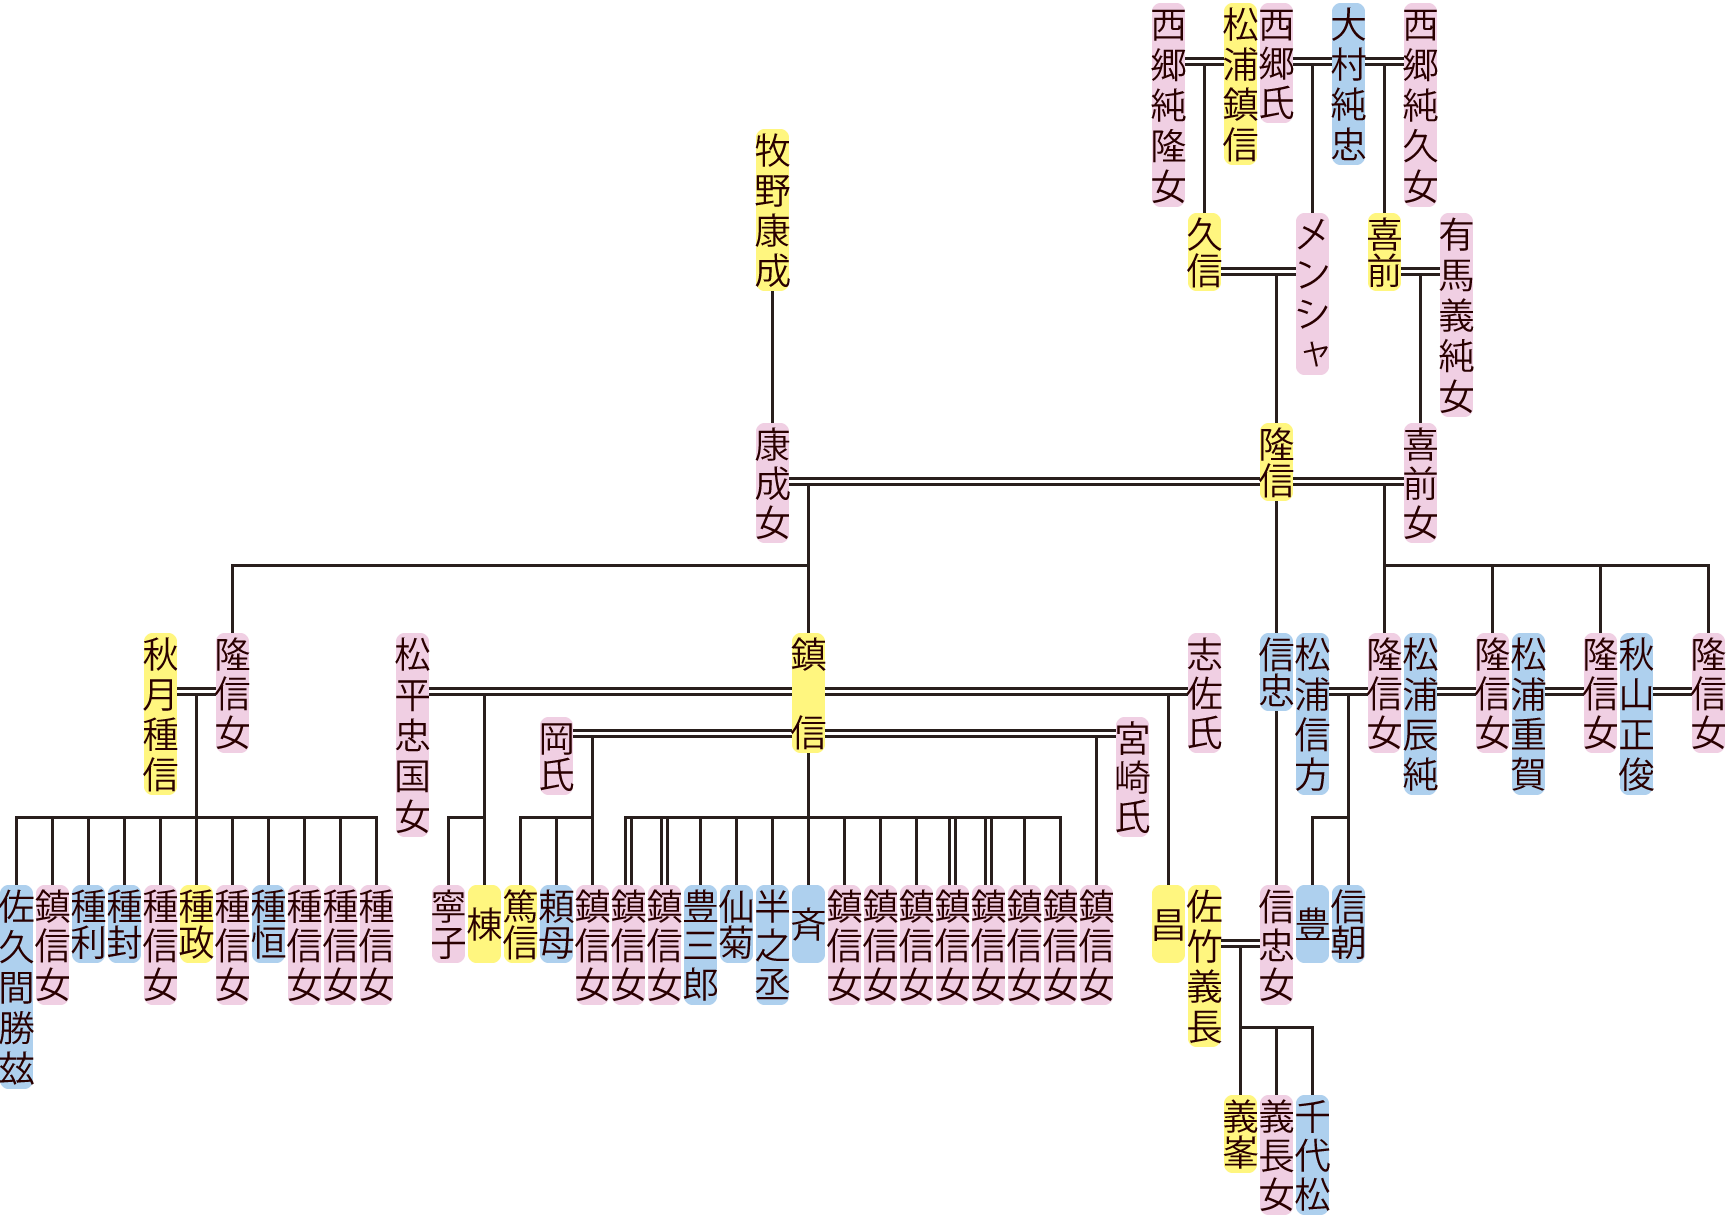 松浦隆信の系図